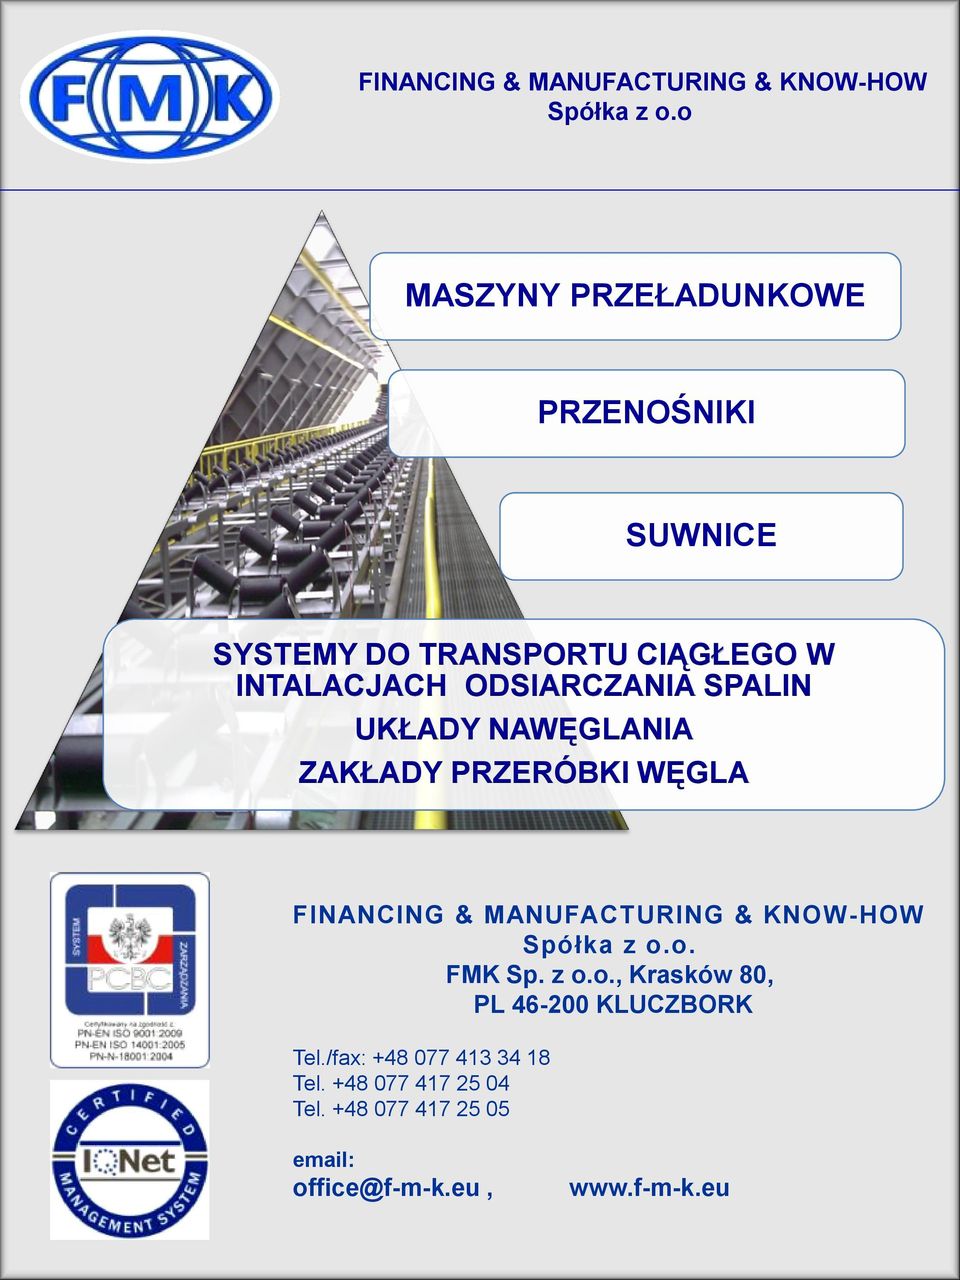 MANUFACTURING & KNOW-HOW. FMK Sp. z o.o., Krasków 80, PL 46-200 KLUCZBORK Tel.